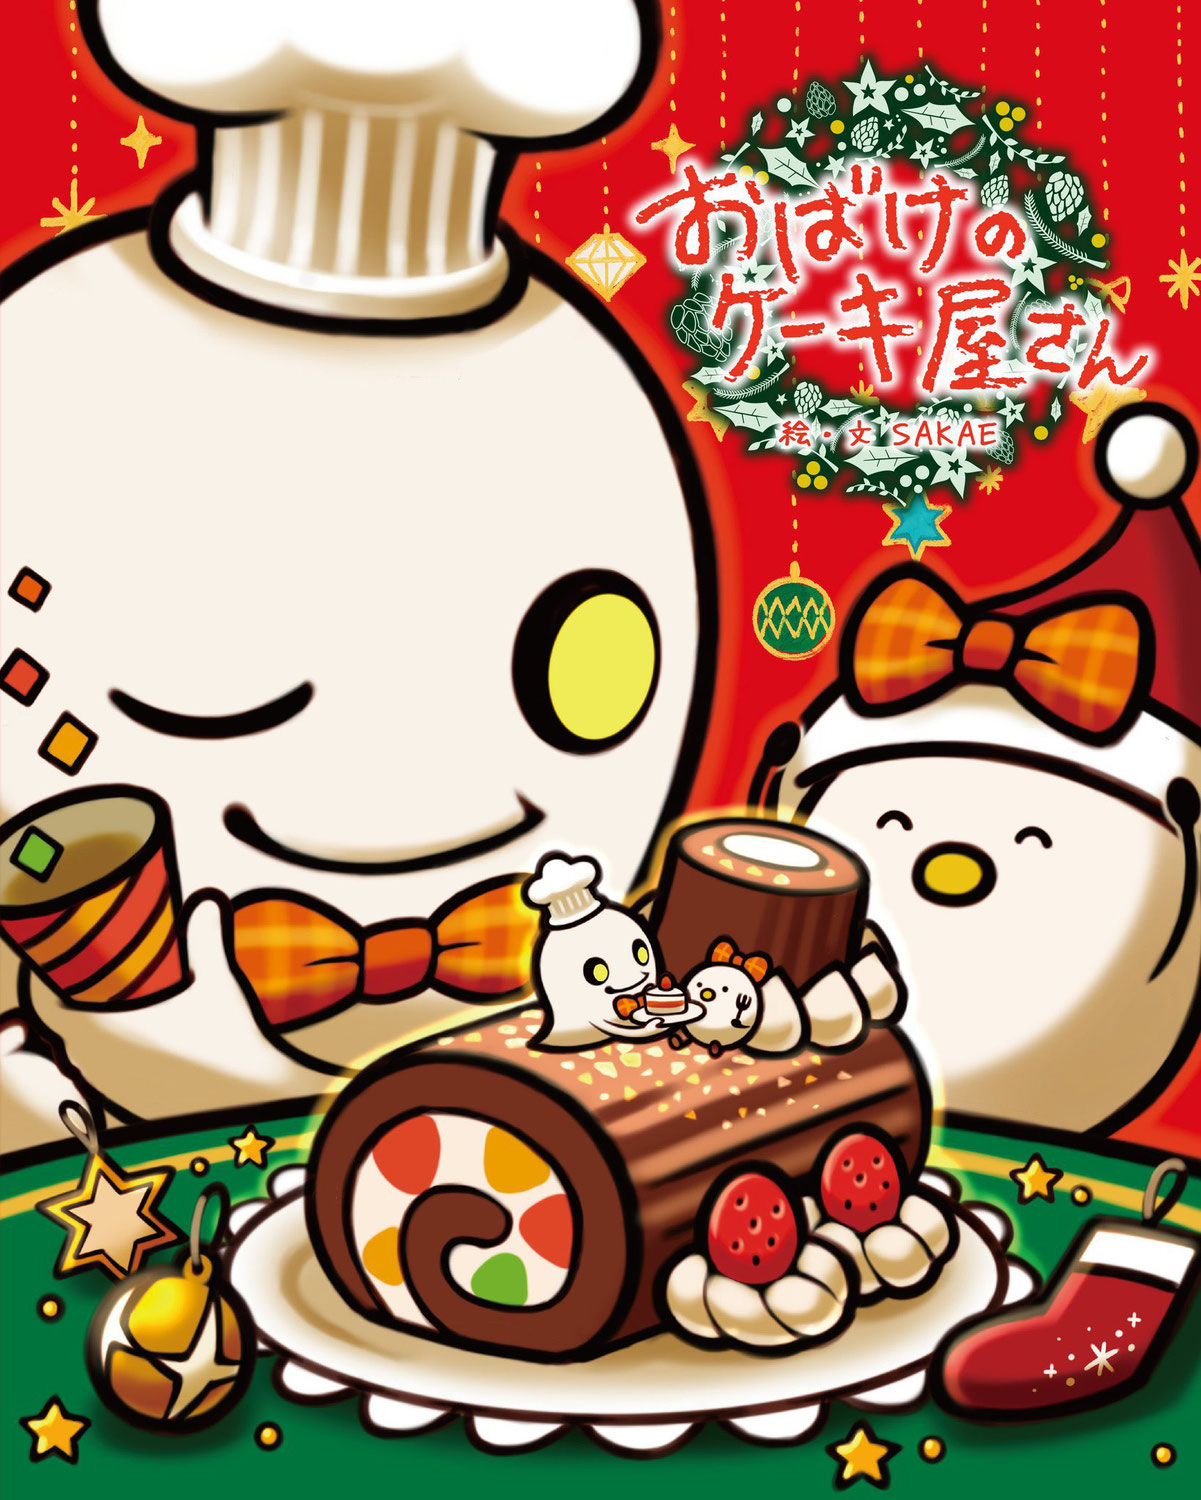 『おばけのケーキ屋さん』クリスマスカバーデザイン発売のお知らせ